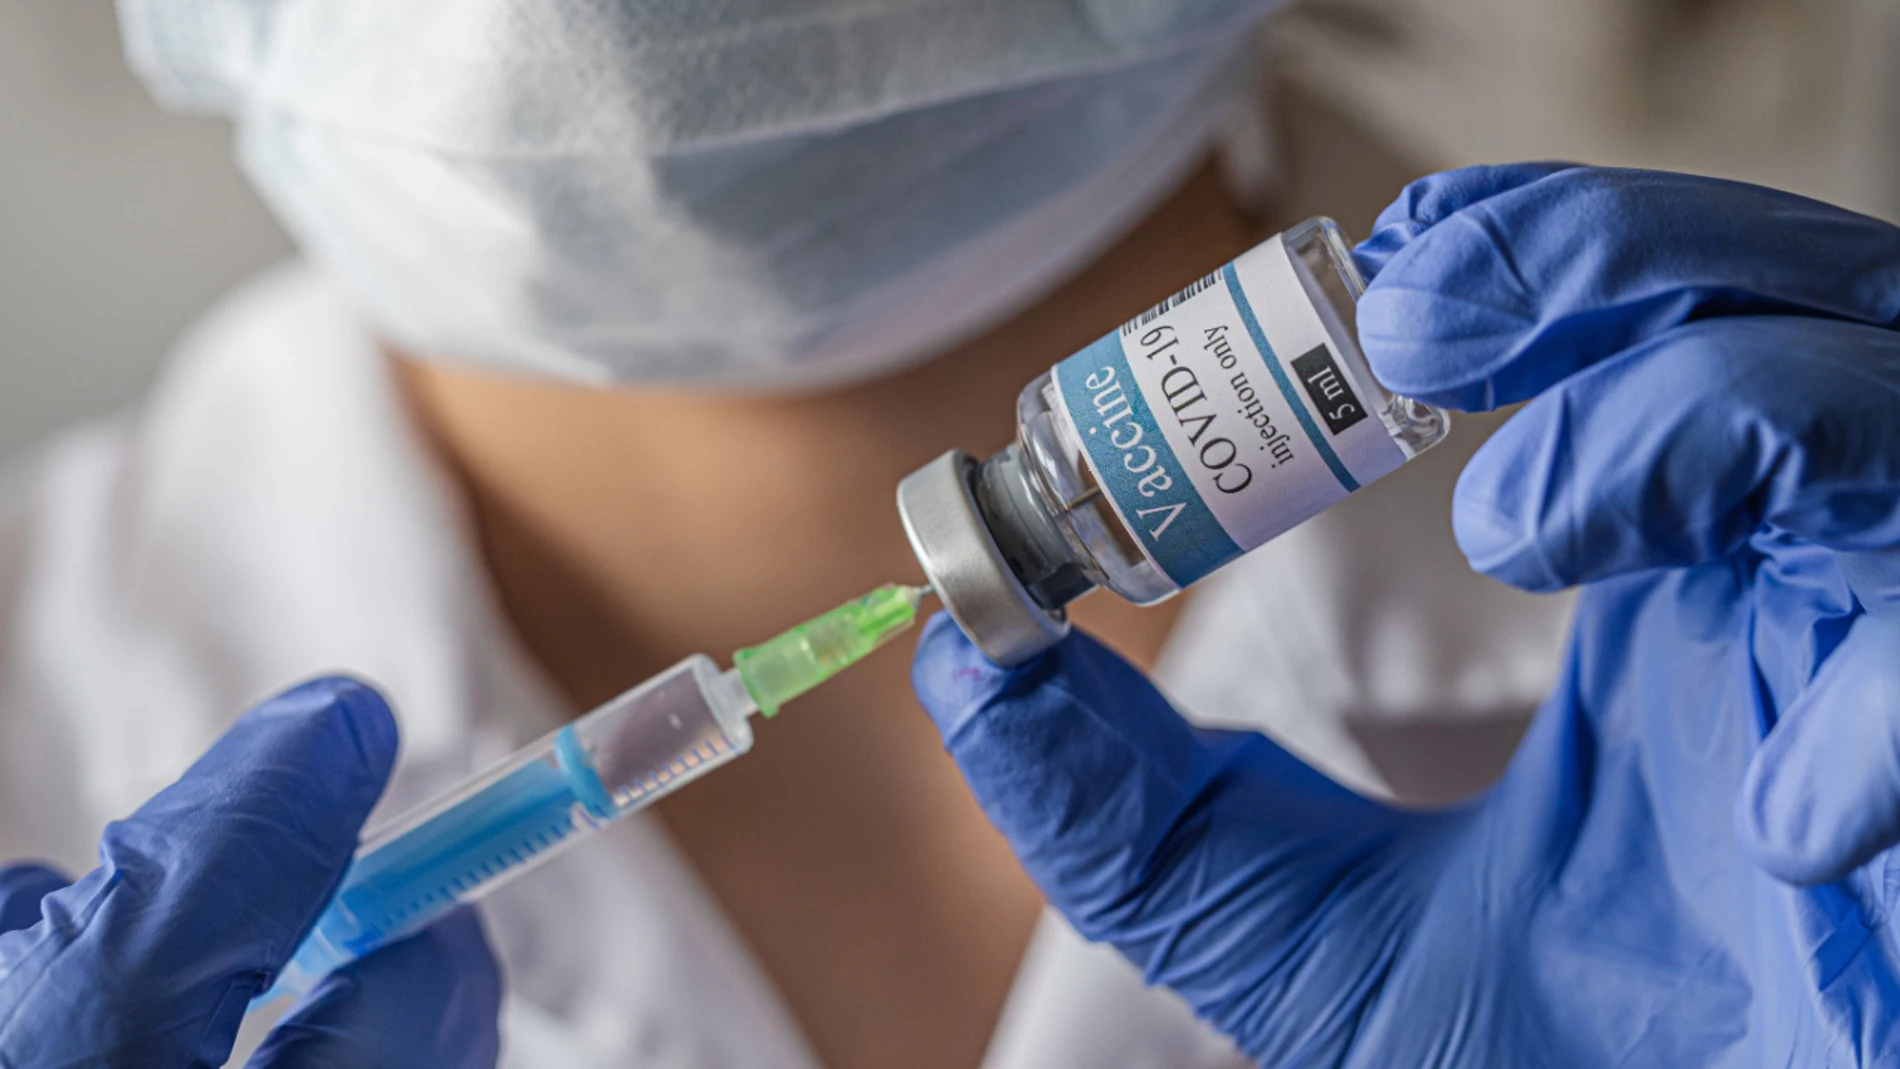 Noticias de la mañana (14-09-20) Comienza el primer ensayo clínico de la vacuna contra el coronavirus en Santander